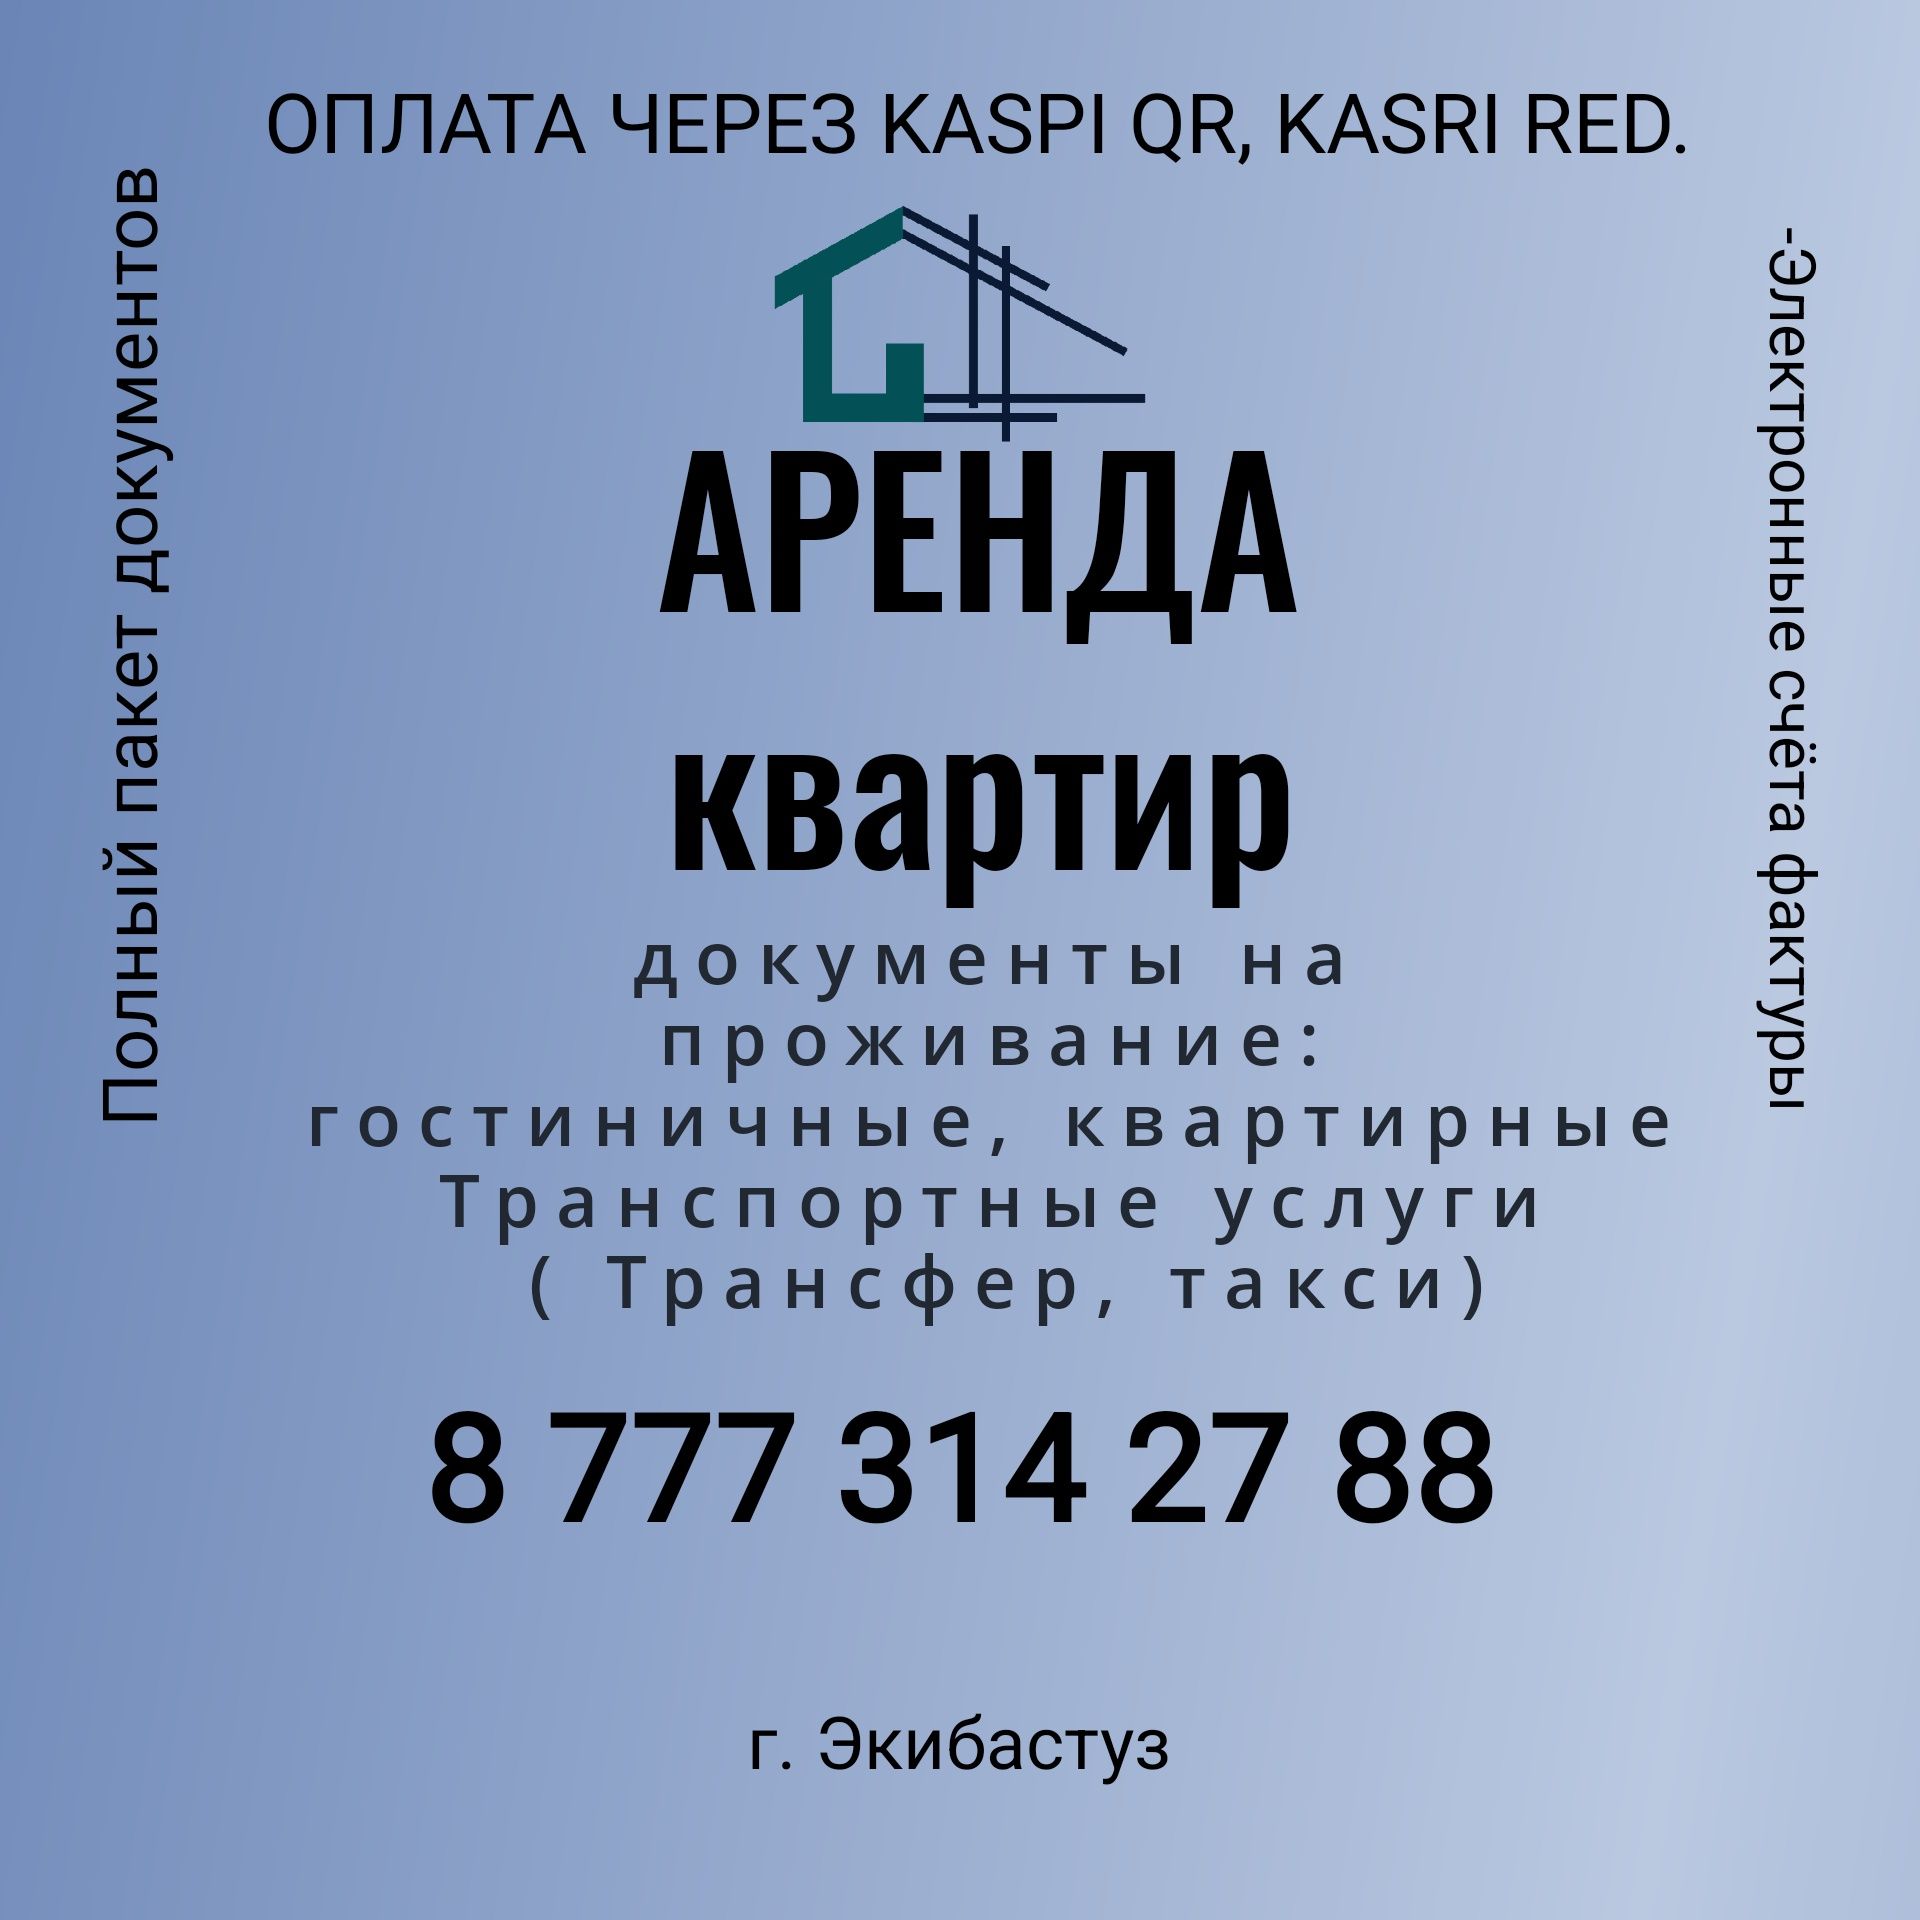 Документы на проживание, такси. Оплата KASPI QR и RED. Любыми картами